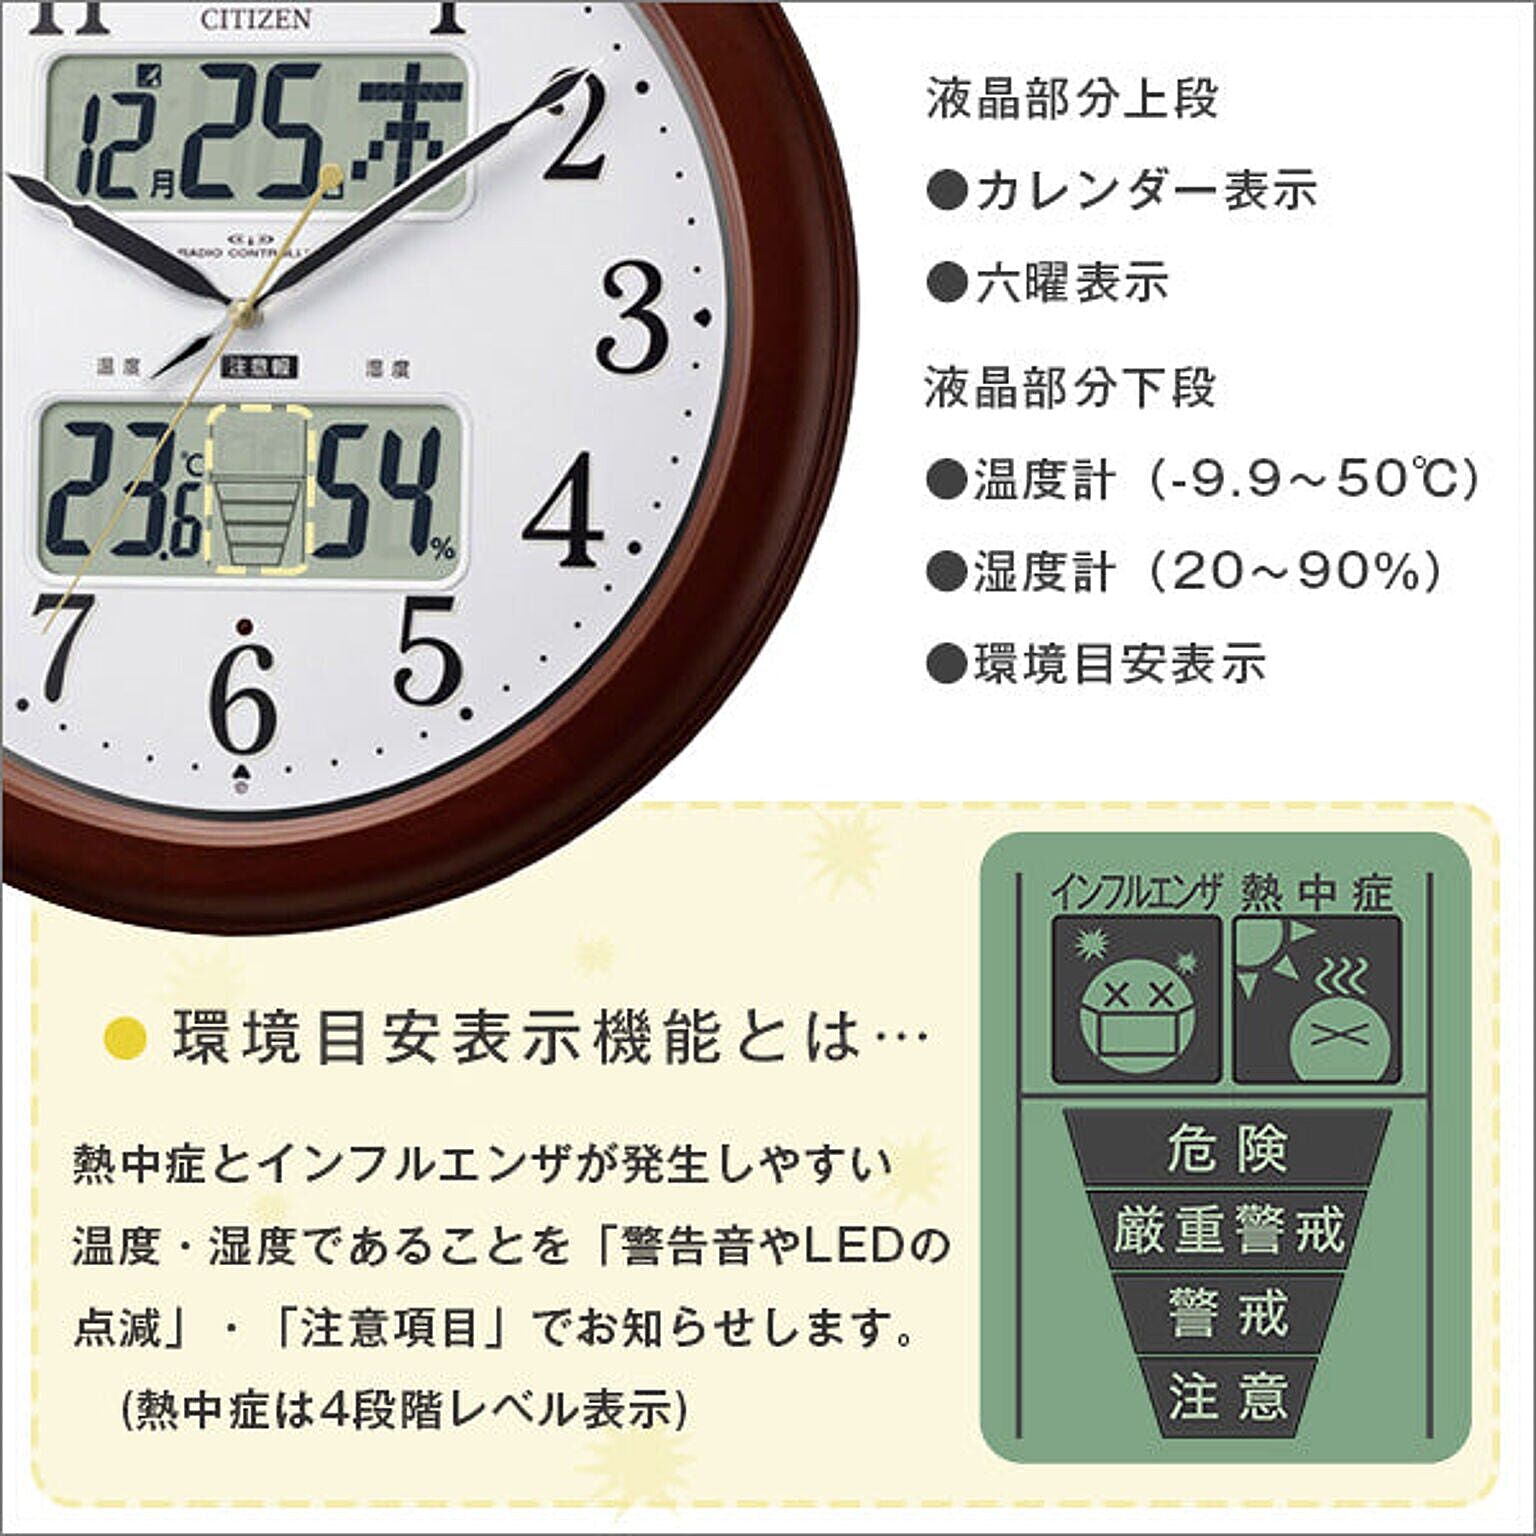 ホームテイスト シチズン高精度温湿度計付き掛け時計（電波時計